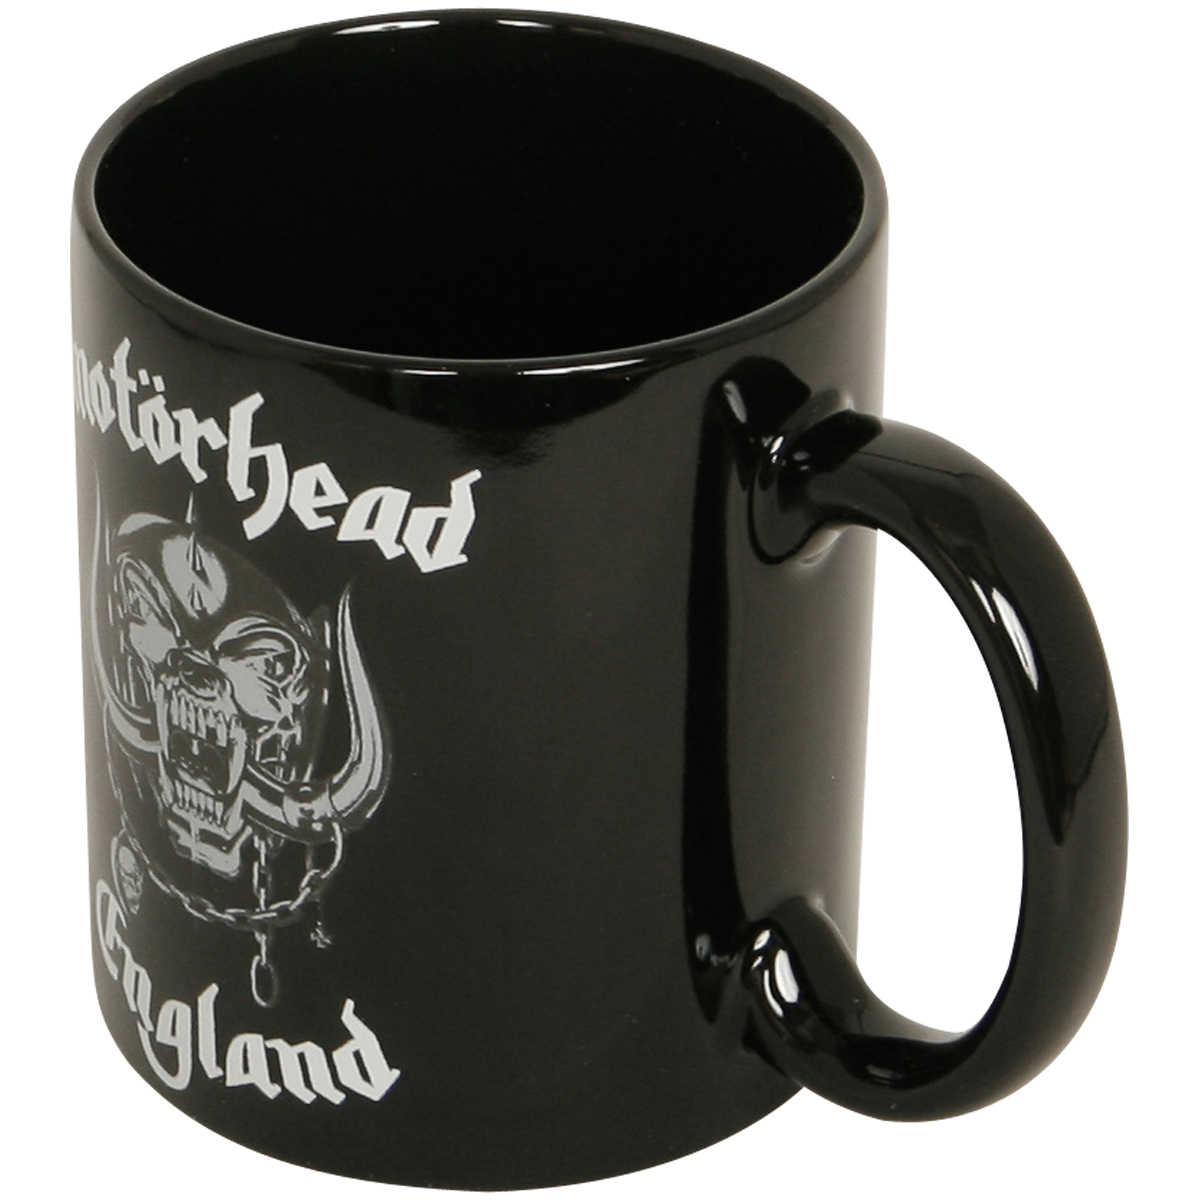 Motörhead - Kaffeebecher England - schwarz